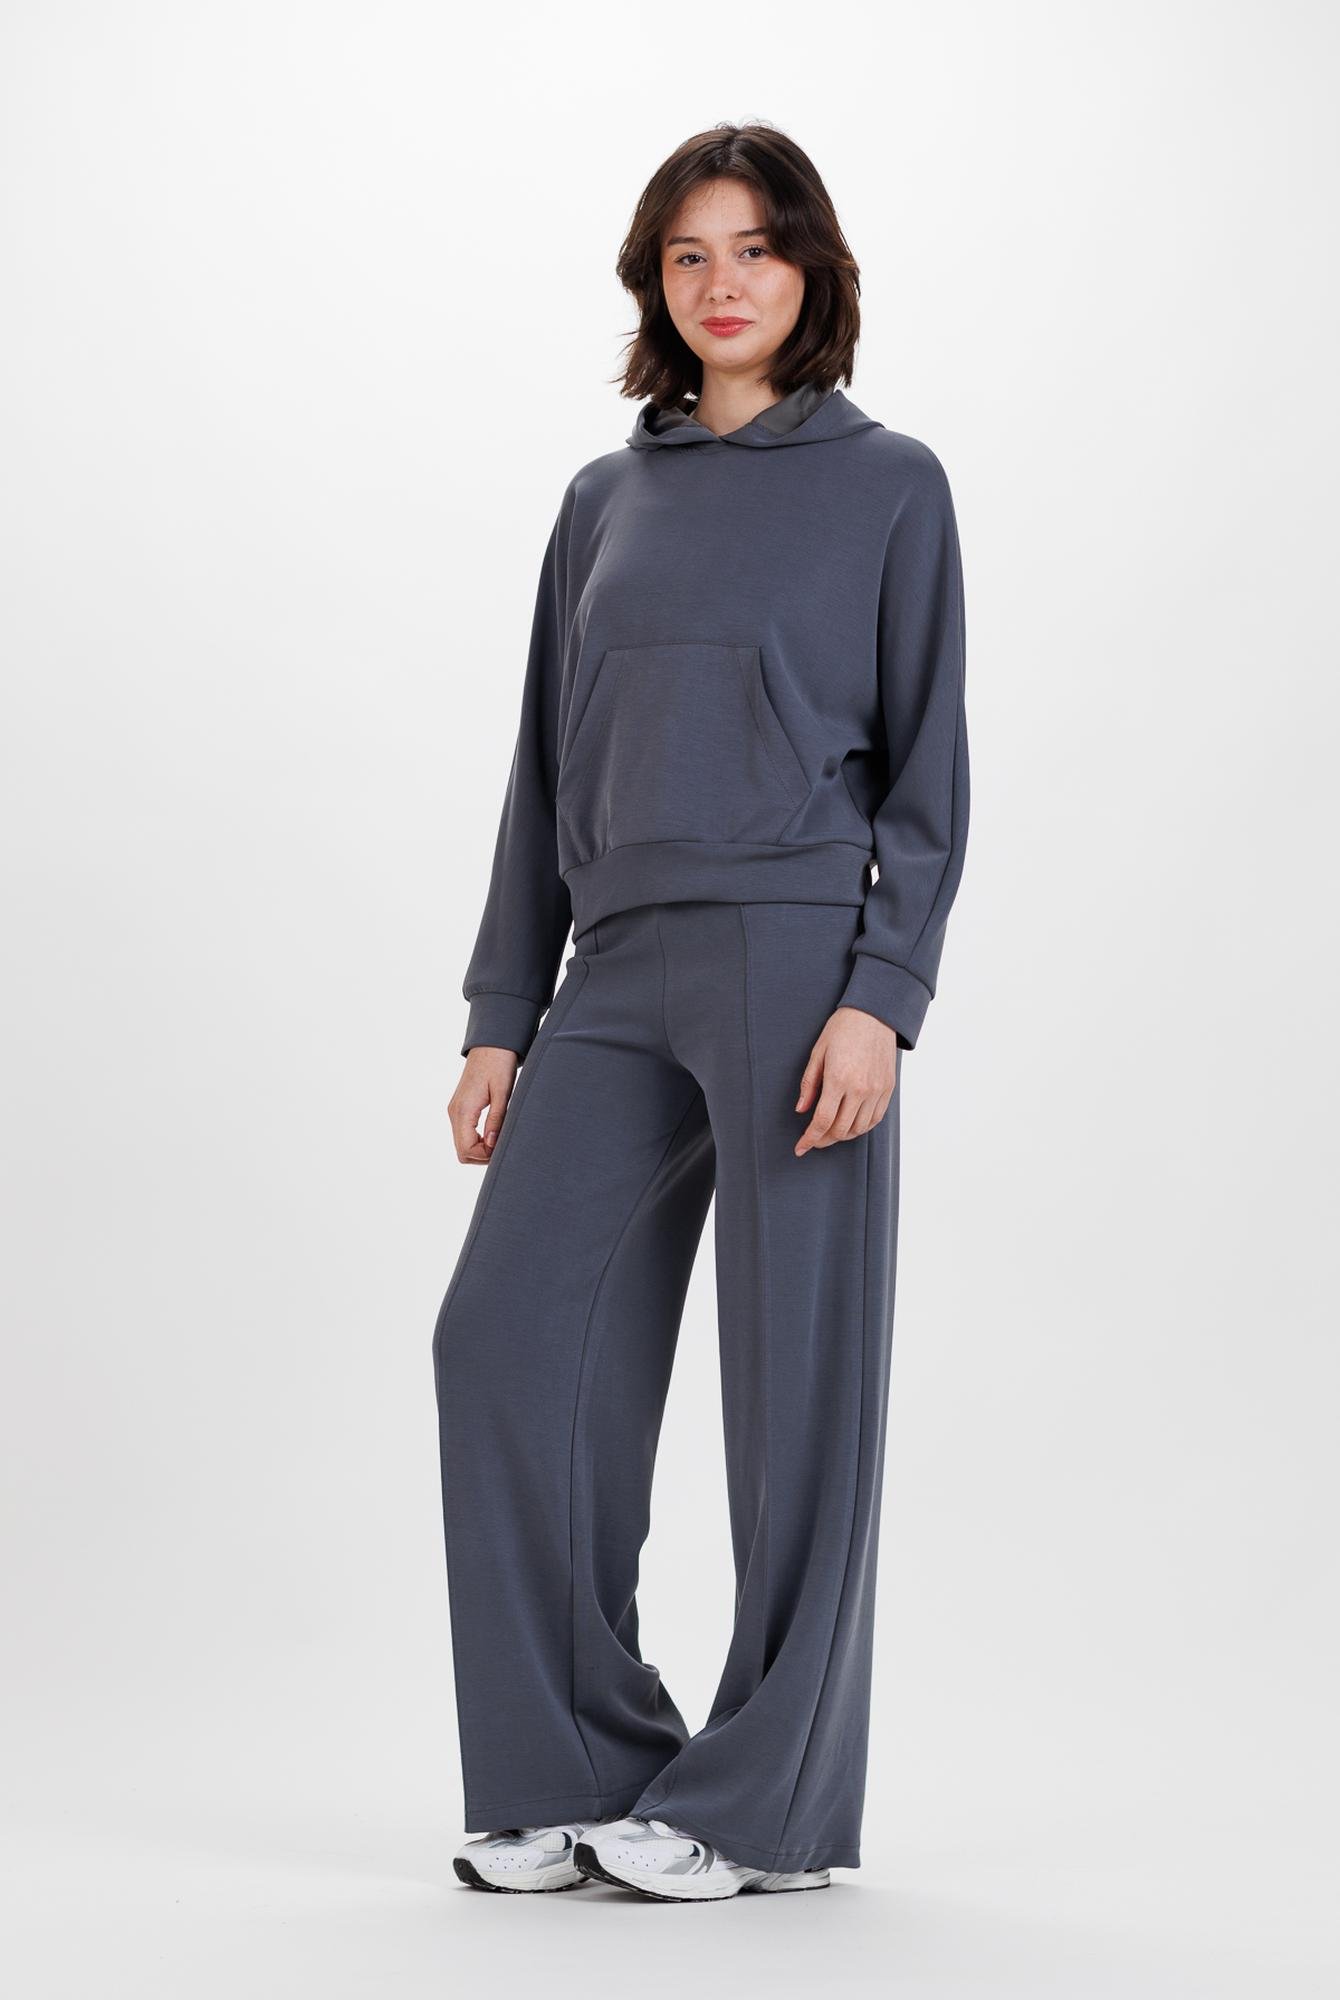  Ecrou Kadın Antrasit Önü Nervurlu Bol Paça Ultra Soft Örme Pantolon